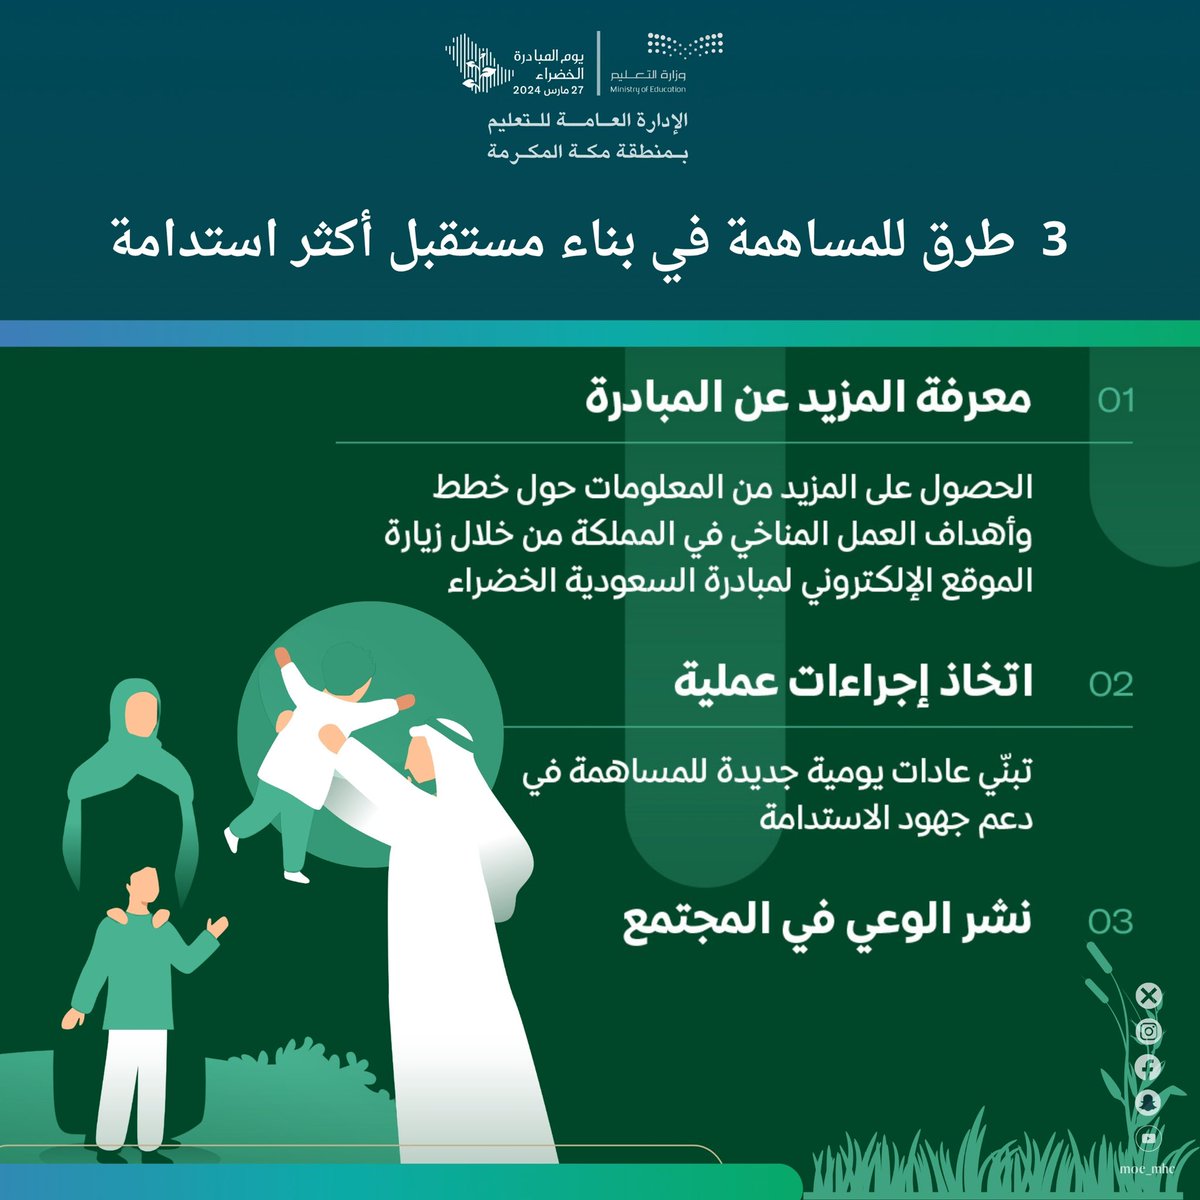 3 طرق للمساهمة في بناء مستقبل أكثر استدامة

#تعليم_مكة 
#لمستقبل_ أكثر_استدامة
#مبادرة_السعودية_الخضراء
#ForAGreenerSaudi